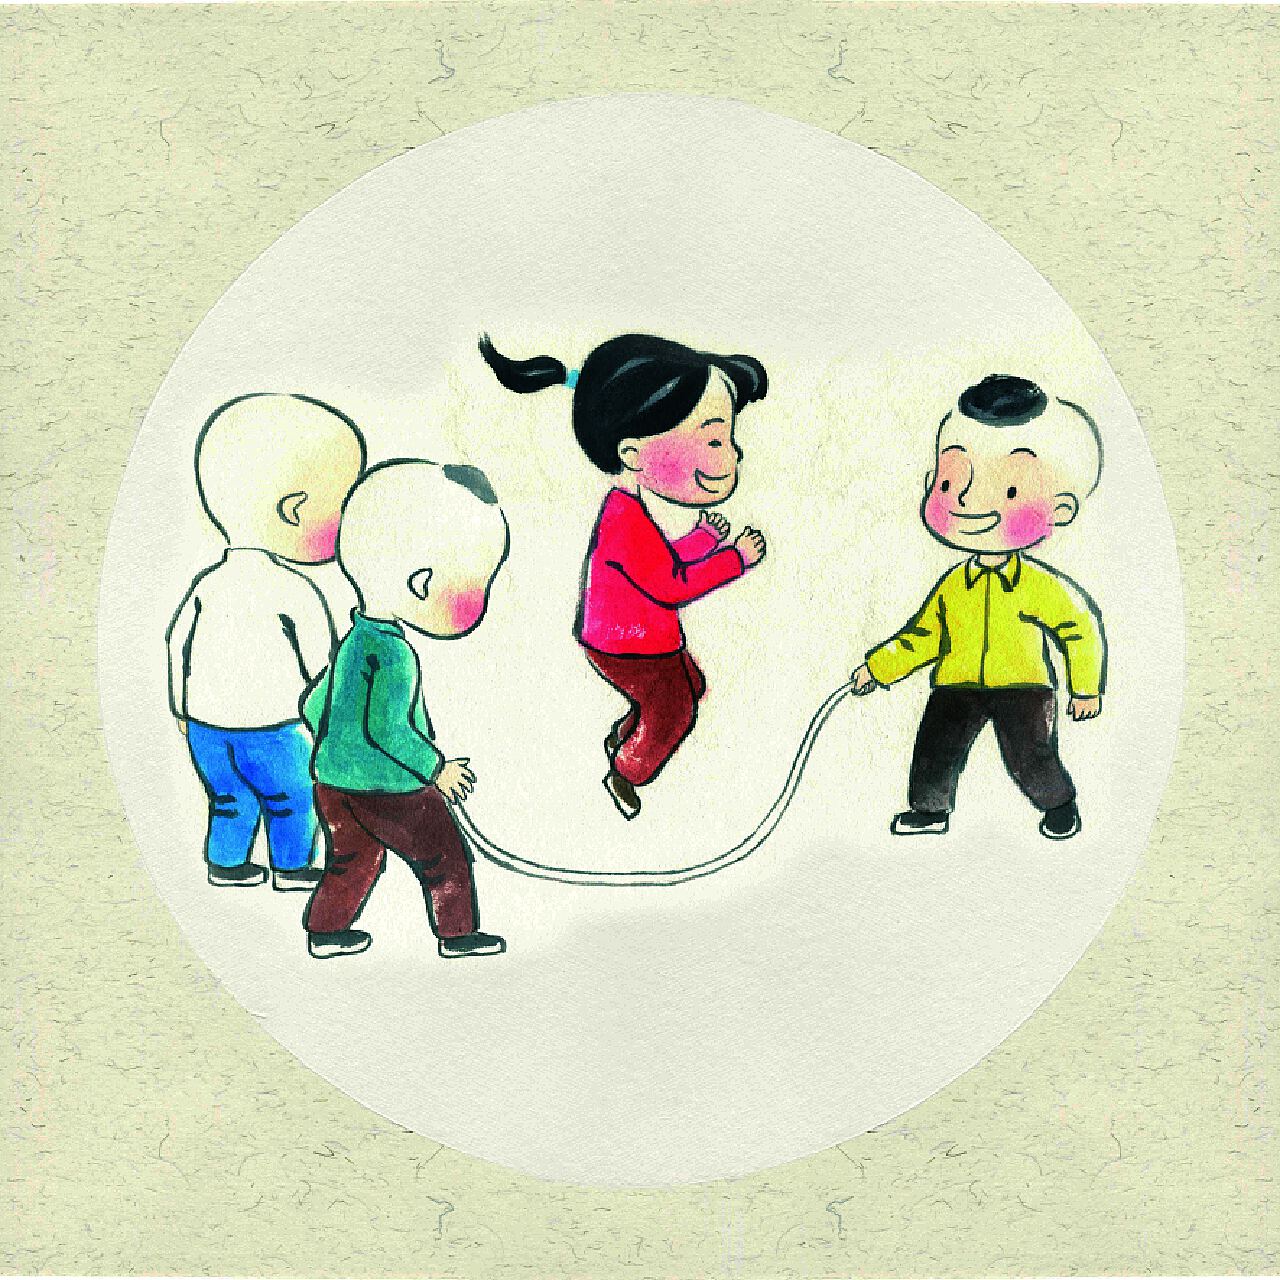 儿童跳绳动作分解图-图库-五毛网